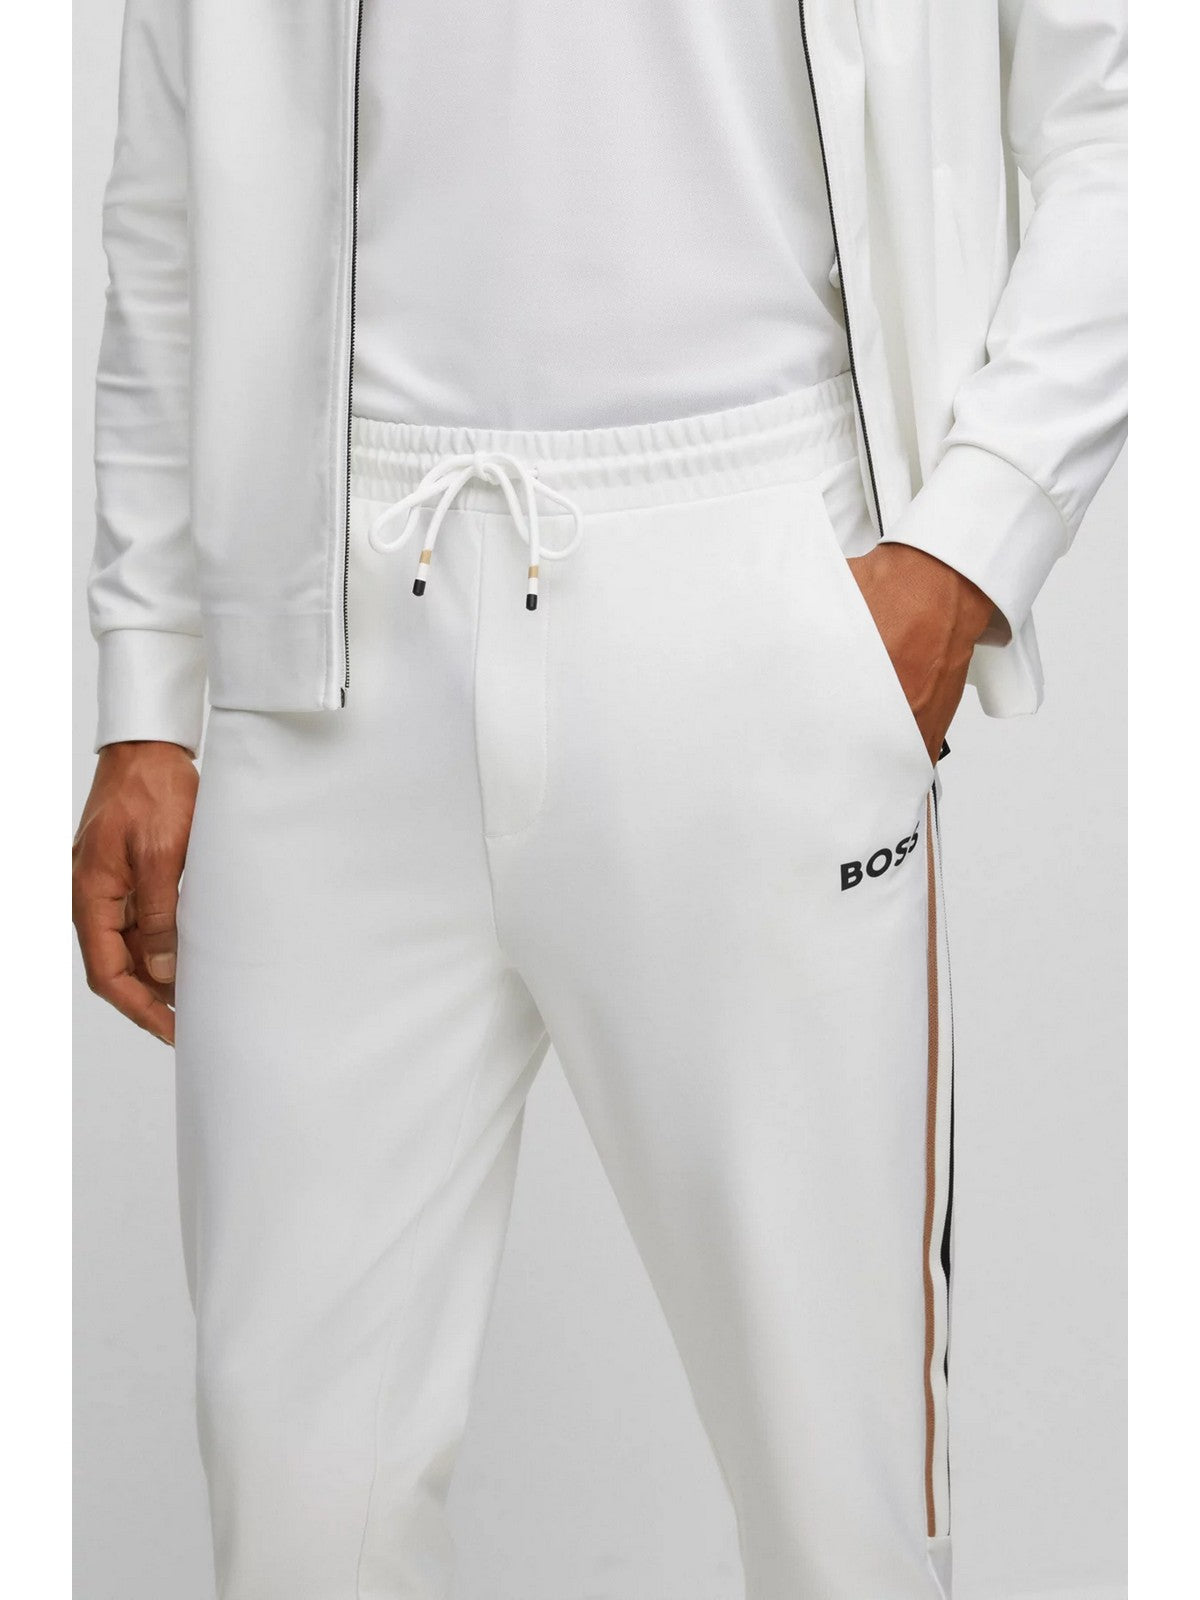 Pantalon HUGO BOSS Hommes 50504553 100 White